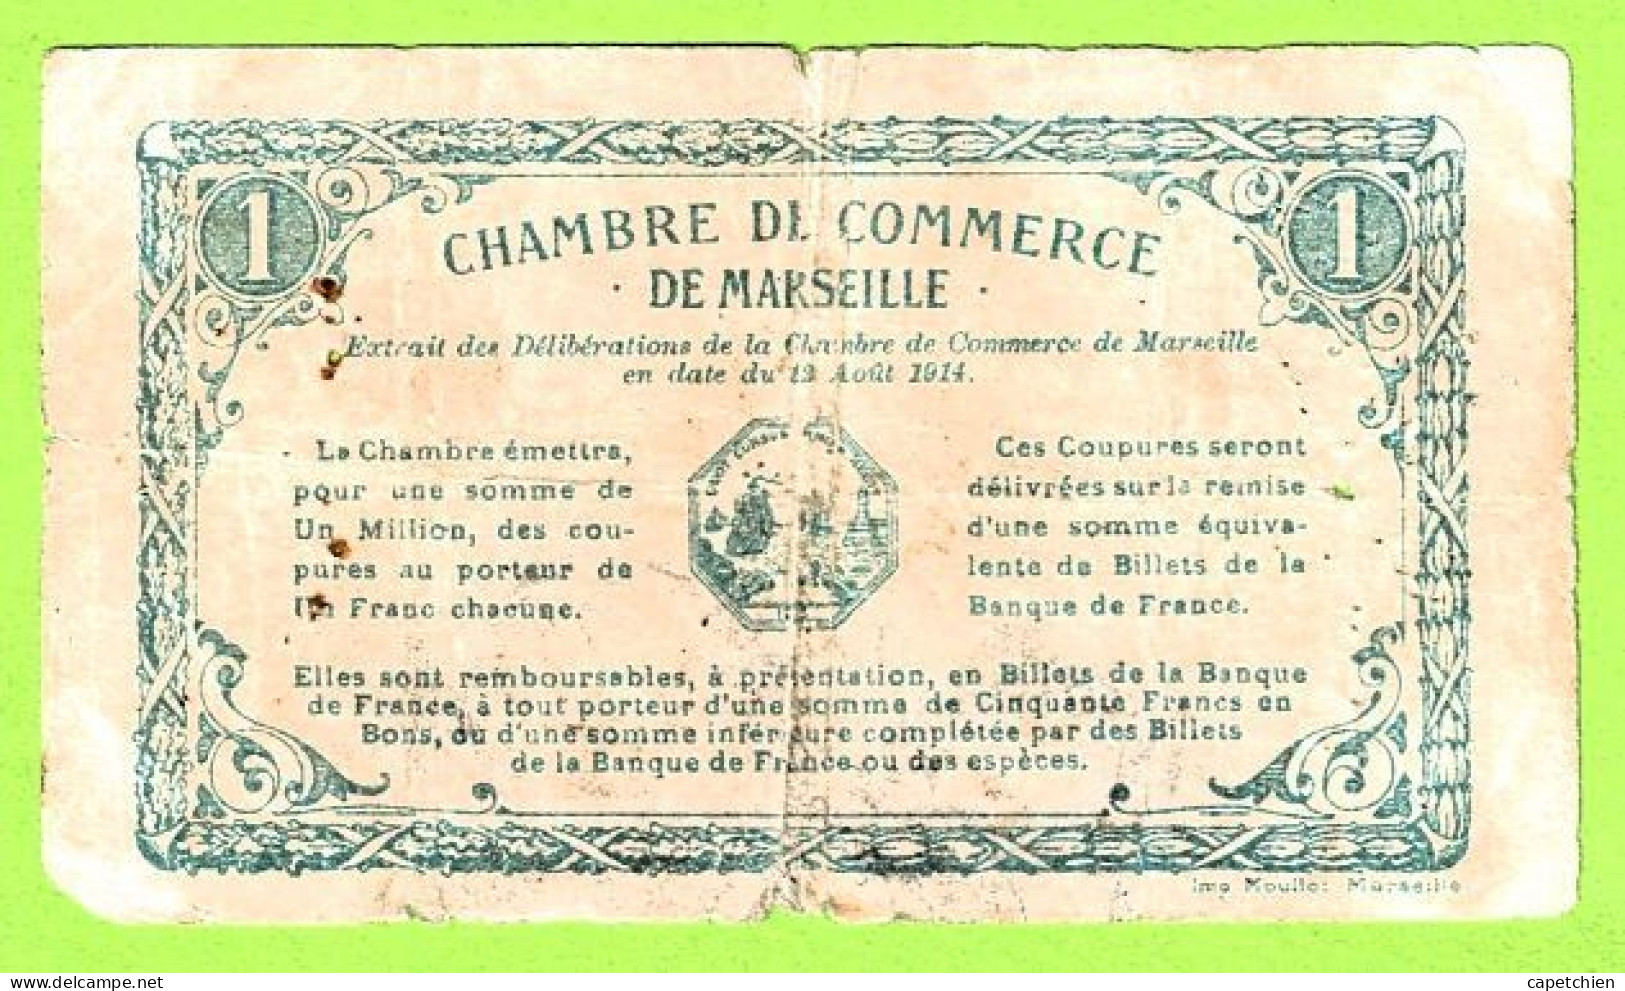 FRANCE / CHAMBRE De COMMERCE / MARSEILLE / 1 FRANC / 13 AOUT 1914 / N° 115236 / SERIE B - Cámara De Comercio